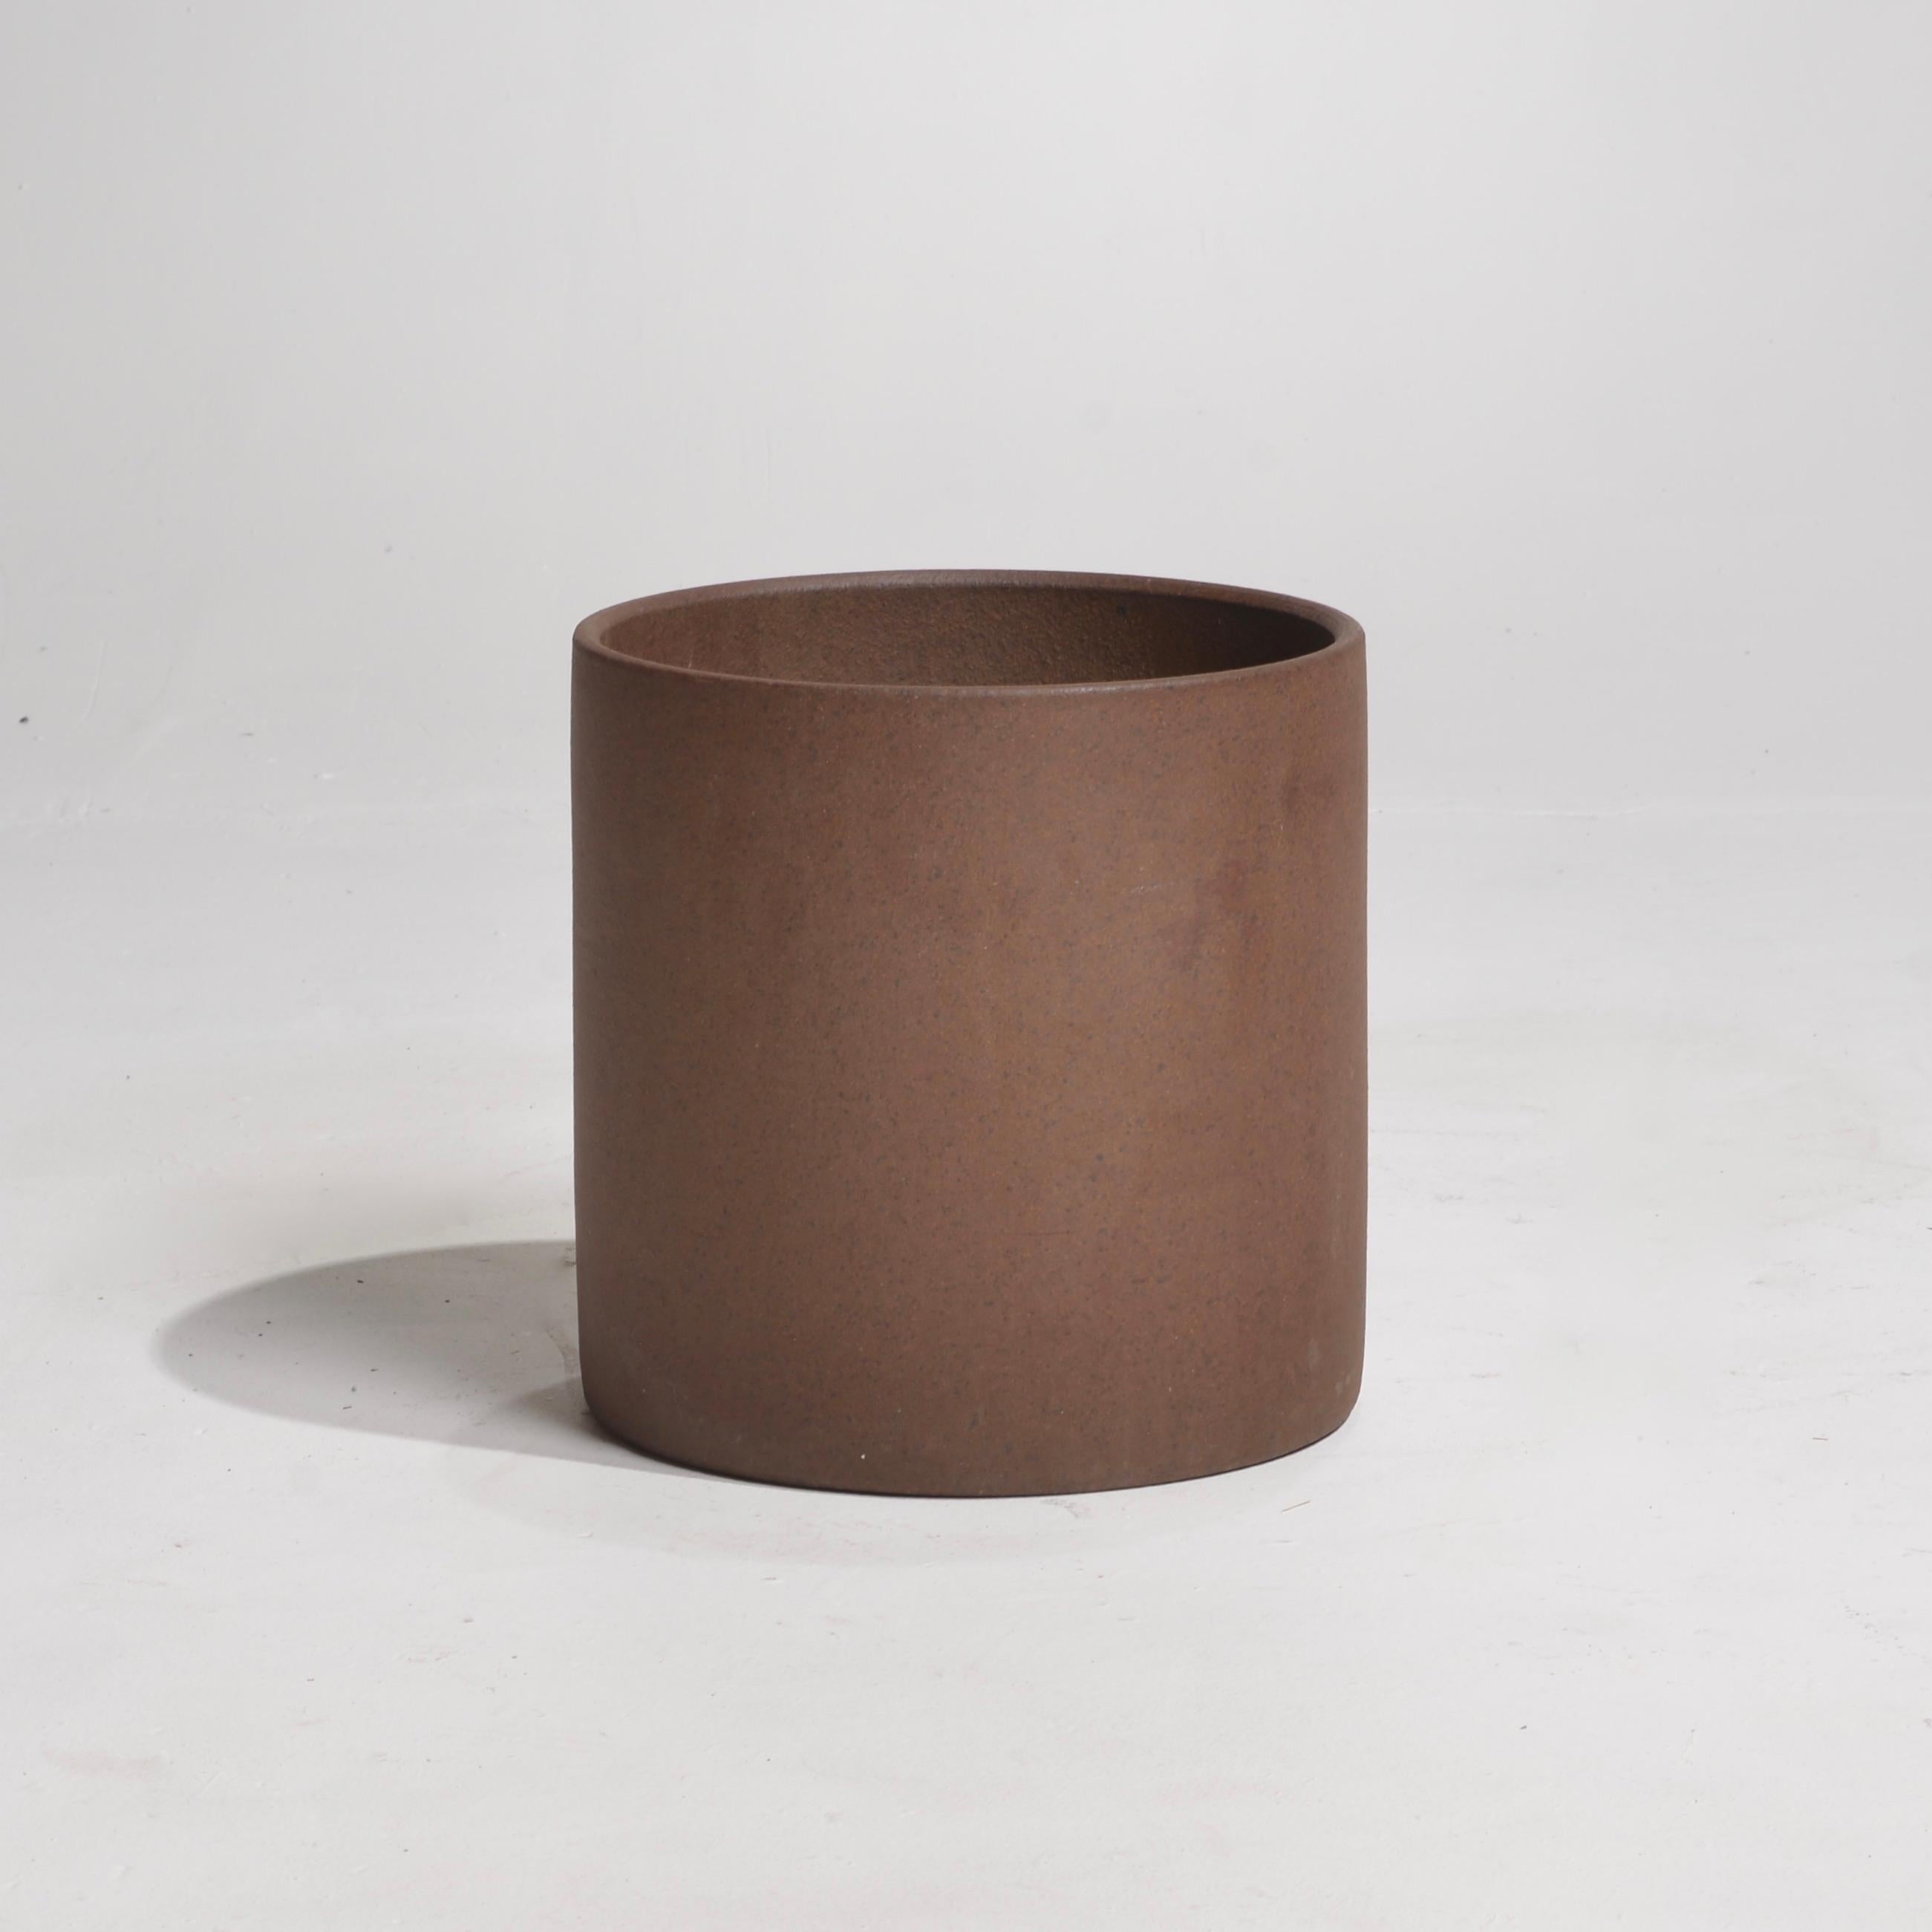 Zylindrisches Pflanzgefäß aus Steingut von David Cressey für Architectural Pottery. Architectural Pottery war ein Unternehmen in Los Angeles, das 1950 von Max und Rita Lawrence gegründet wurde. Prominente Architekten wie Pierre Koenig und Richard